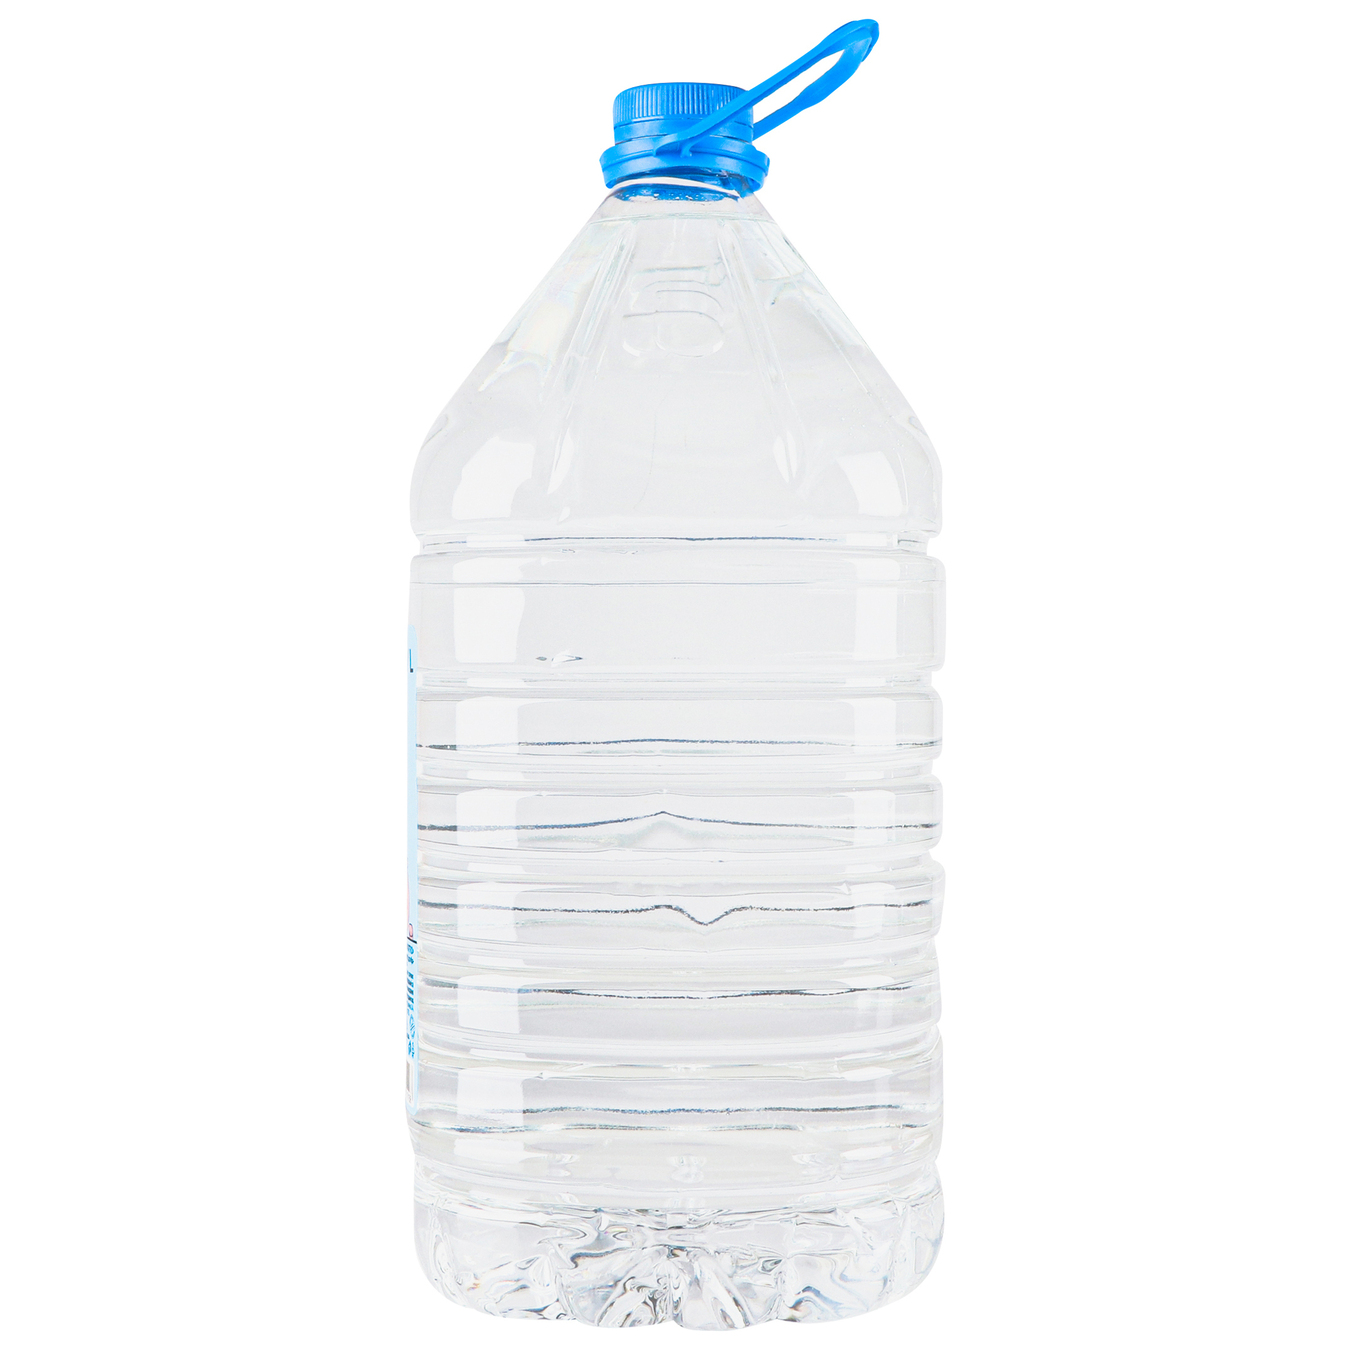 Malyatko children's drinking water 5l 2